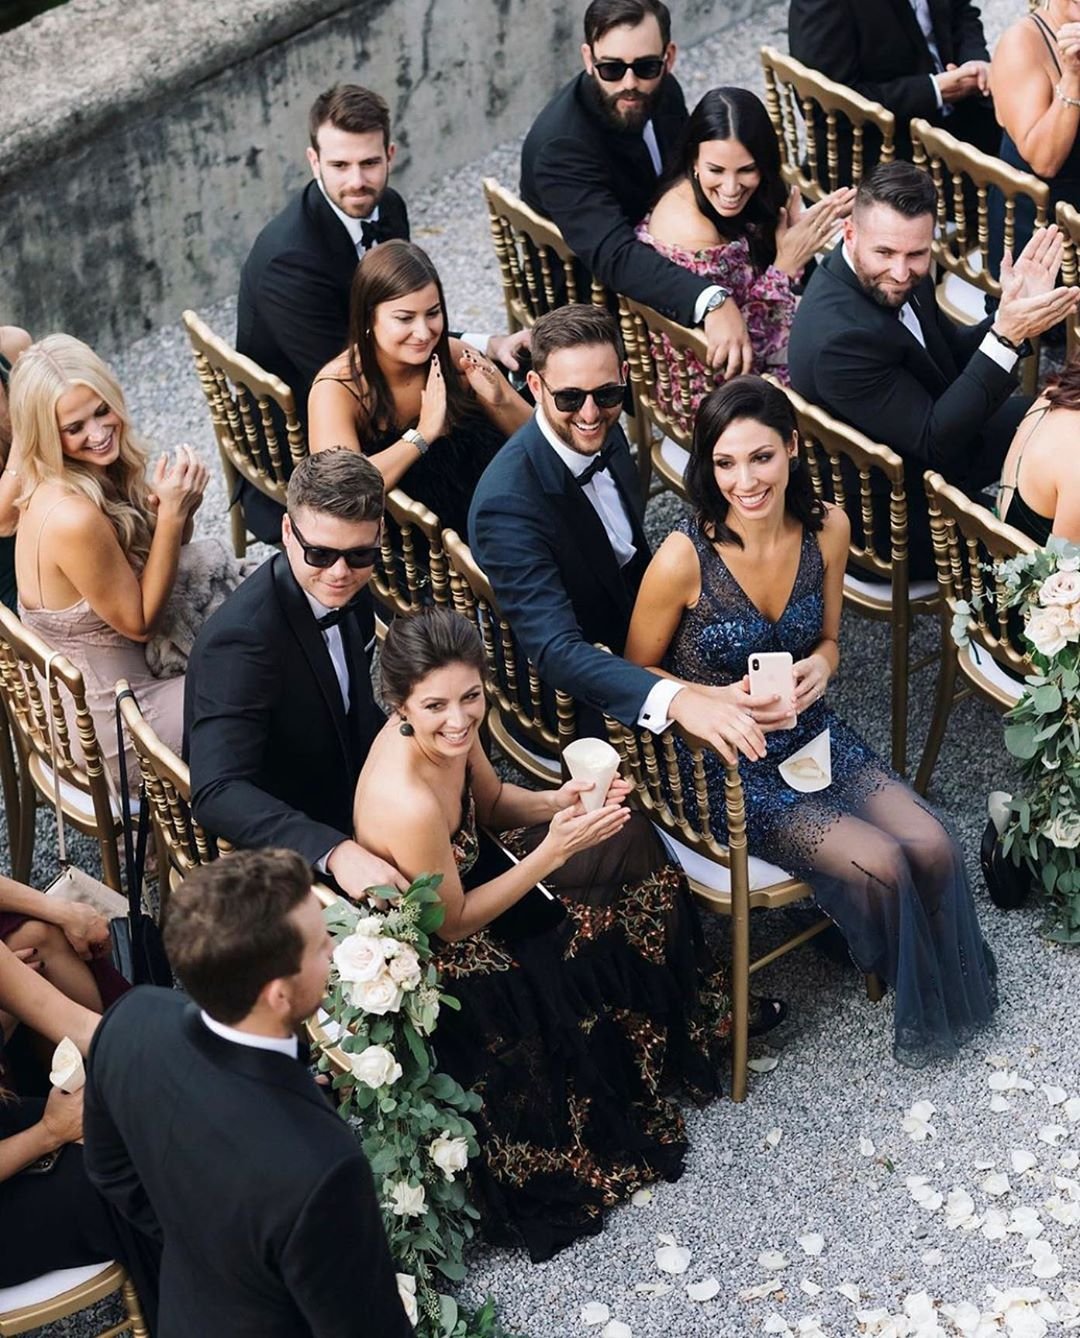 Дресс код на свадьбу для гостей. Гости на свадьбе. Европейская свадьба. Стиль на свадьбу для гостей. Свадьба в европейском стиле одежда гостей.